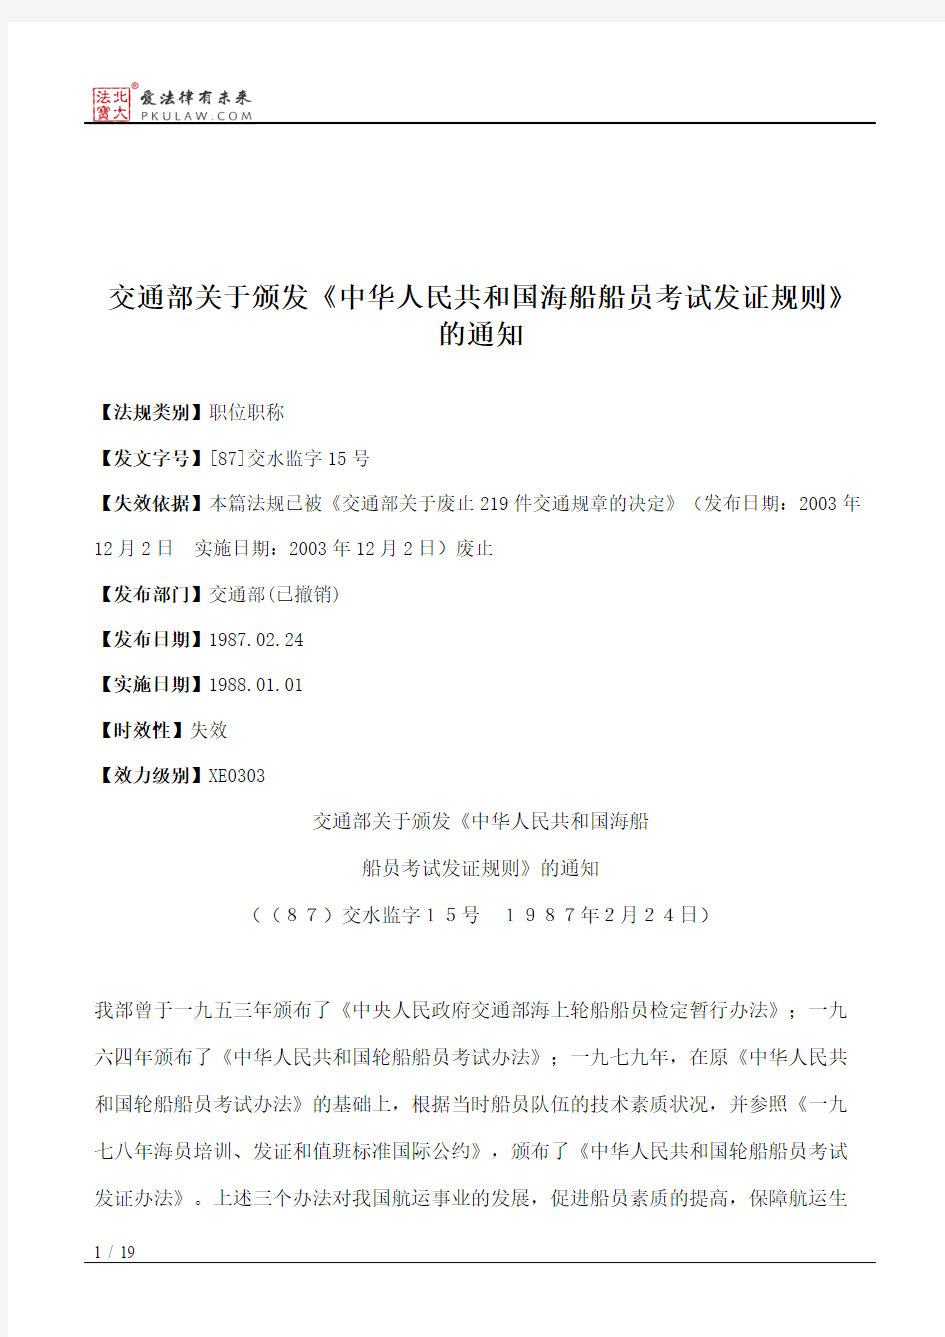 交通部关于颁发《中华人民共和国海船船员考试发证规则》的通知